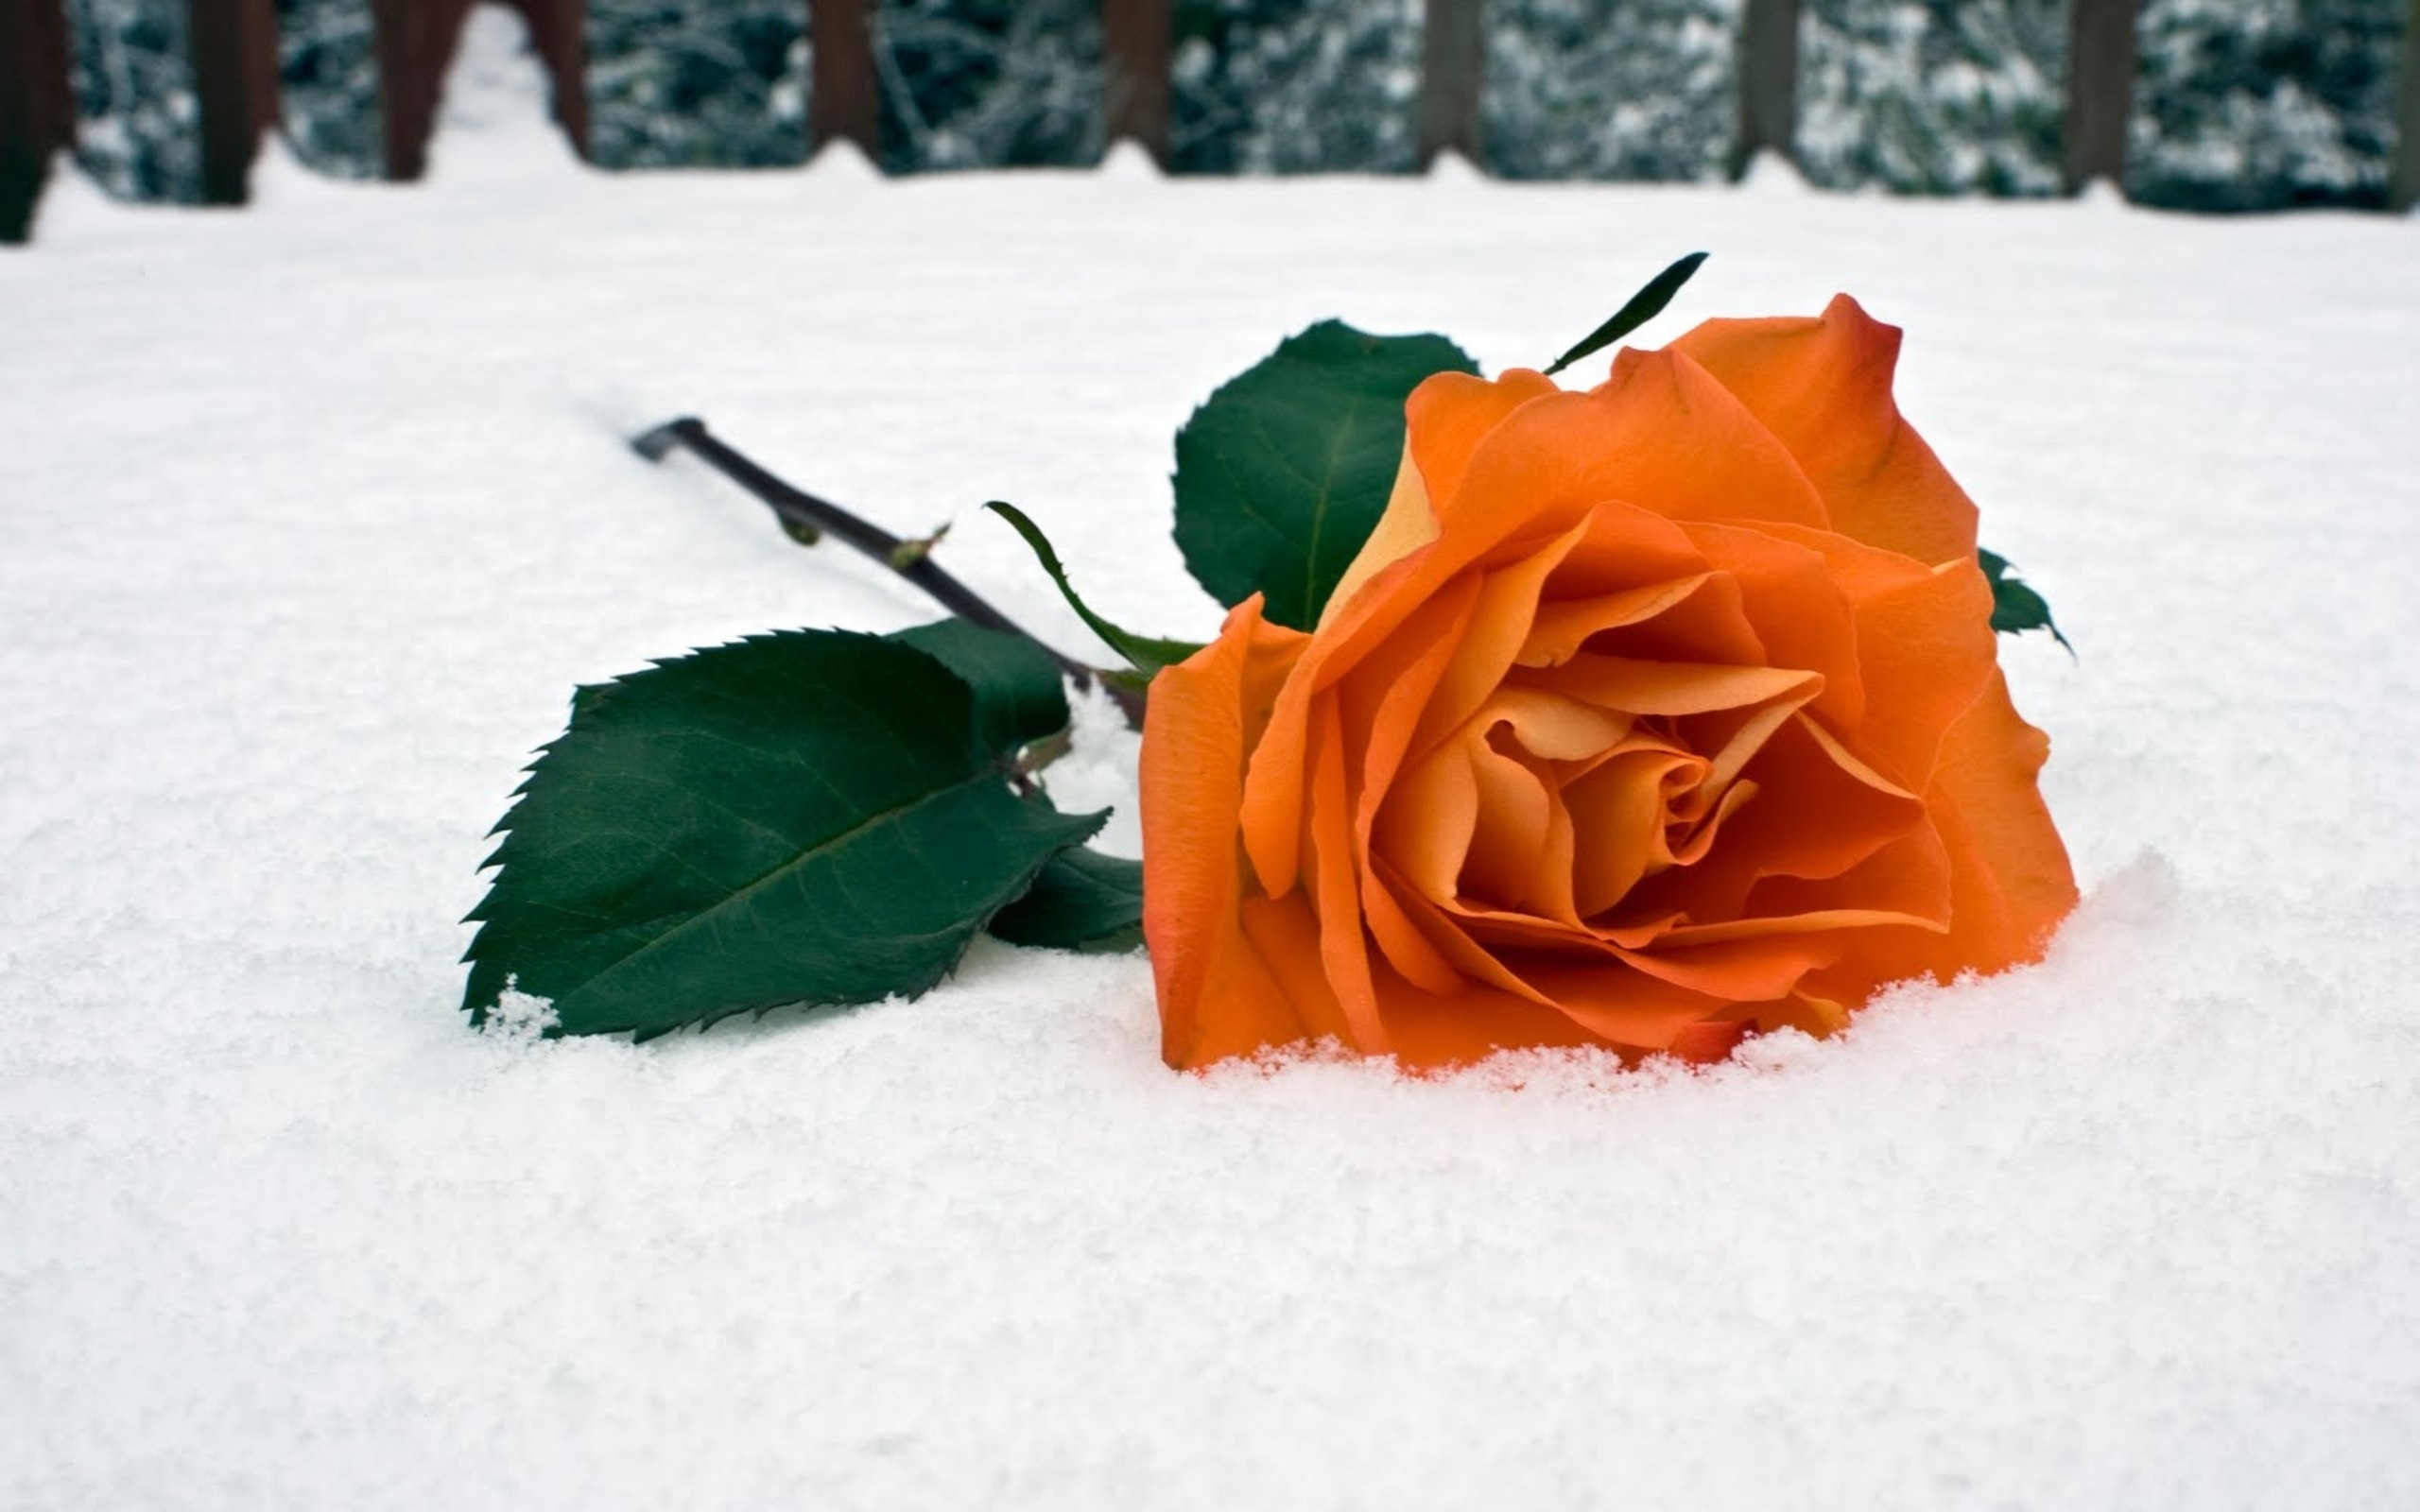 Скачать обои бесплатно Снег, Розы, Цветы, Растения картинка на рабочий стол ПК